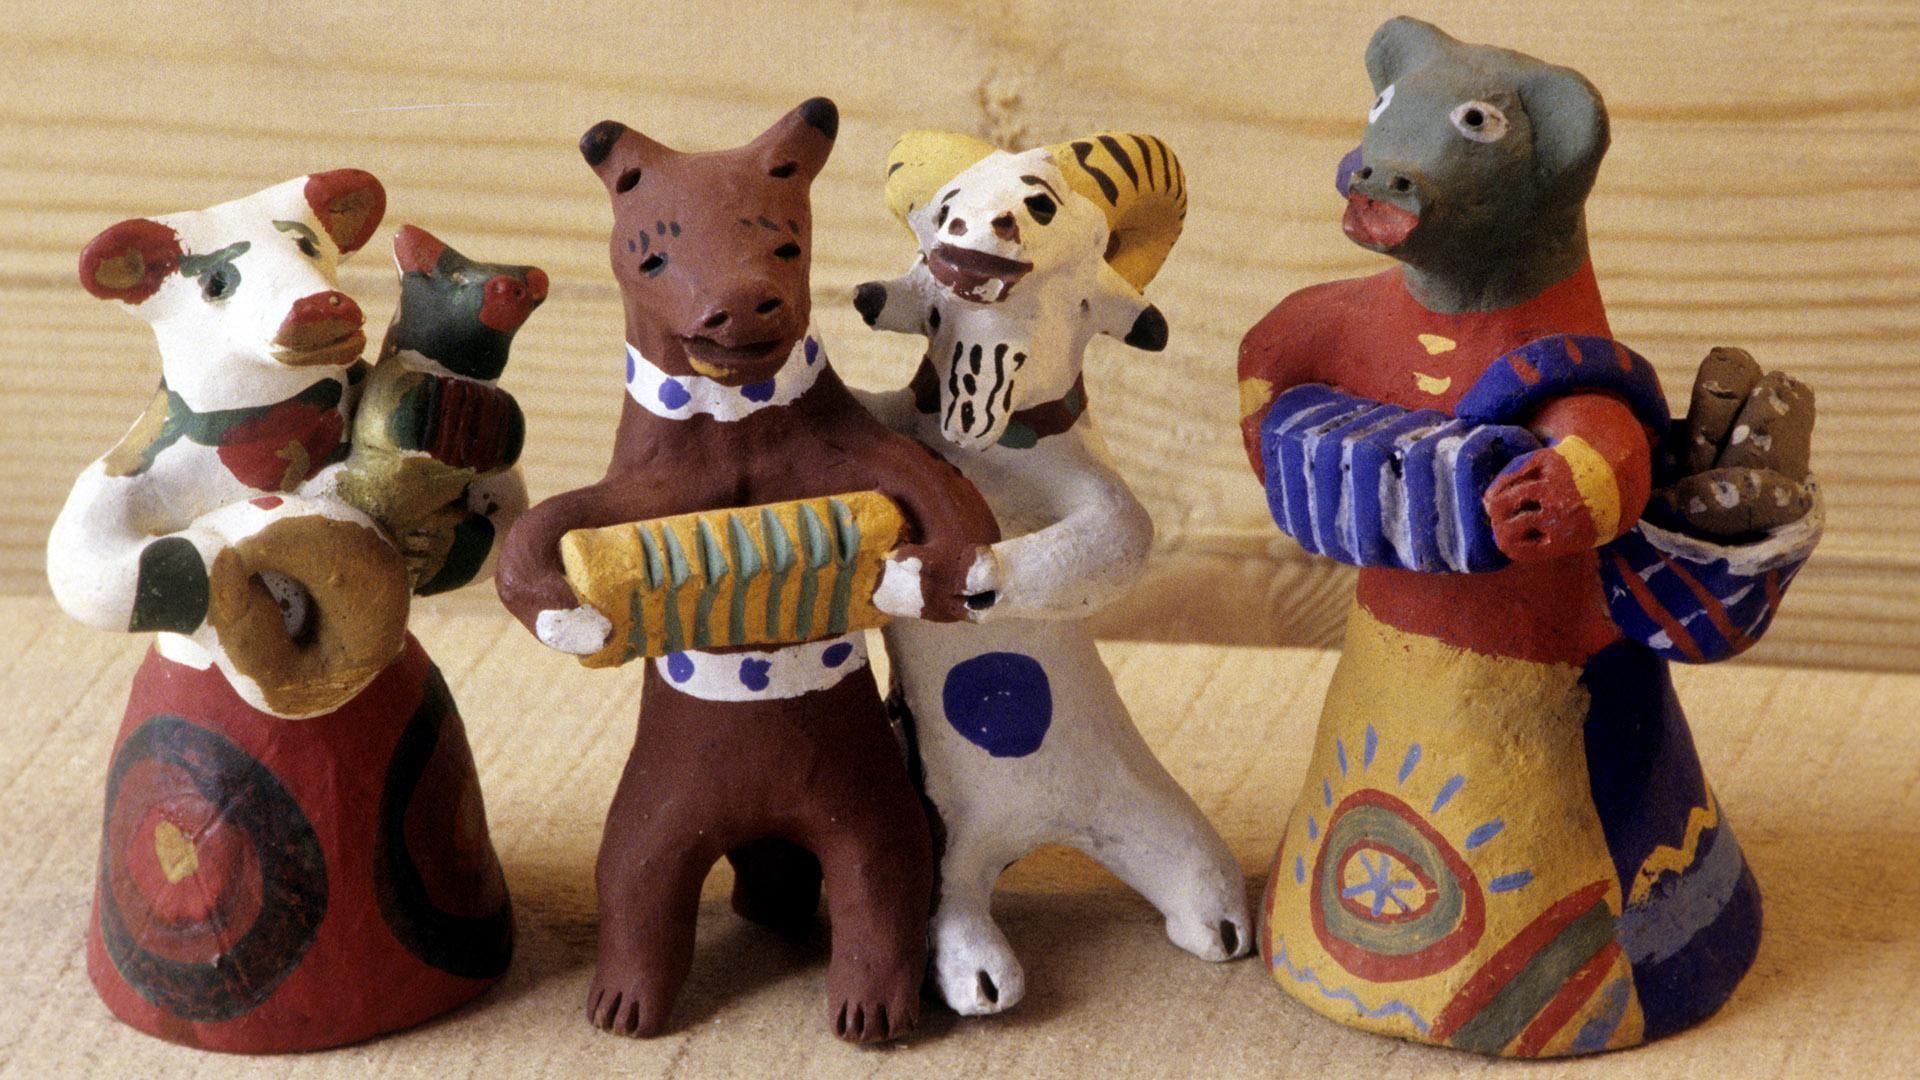 Глиняная игрушка для музицирования. Народная глиняная игрушка Каргопольская. Народные промыслы Каргопольская игрушка. Каргопольская глиняная игрушка. Каргопольская глиняная игрушка медведь.